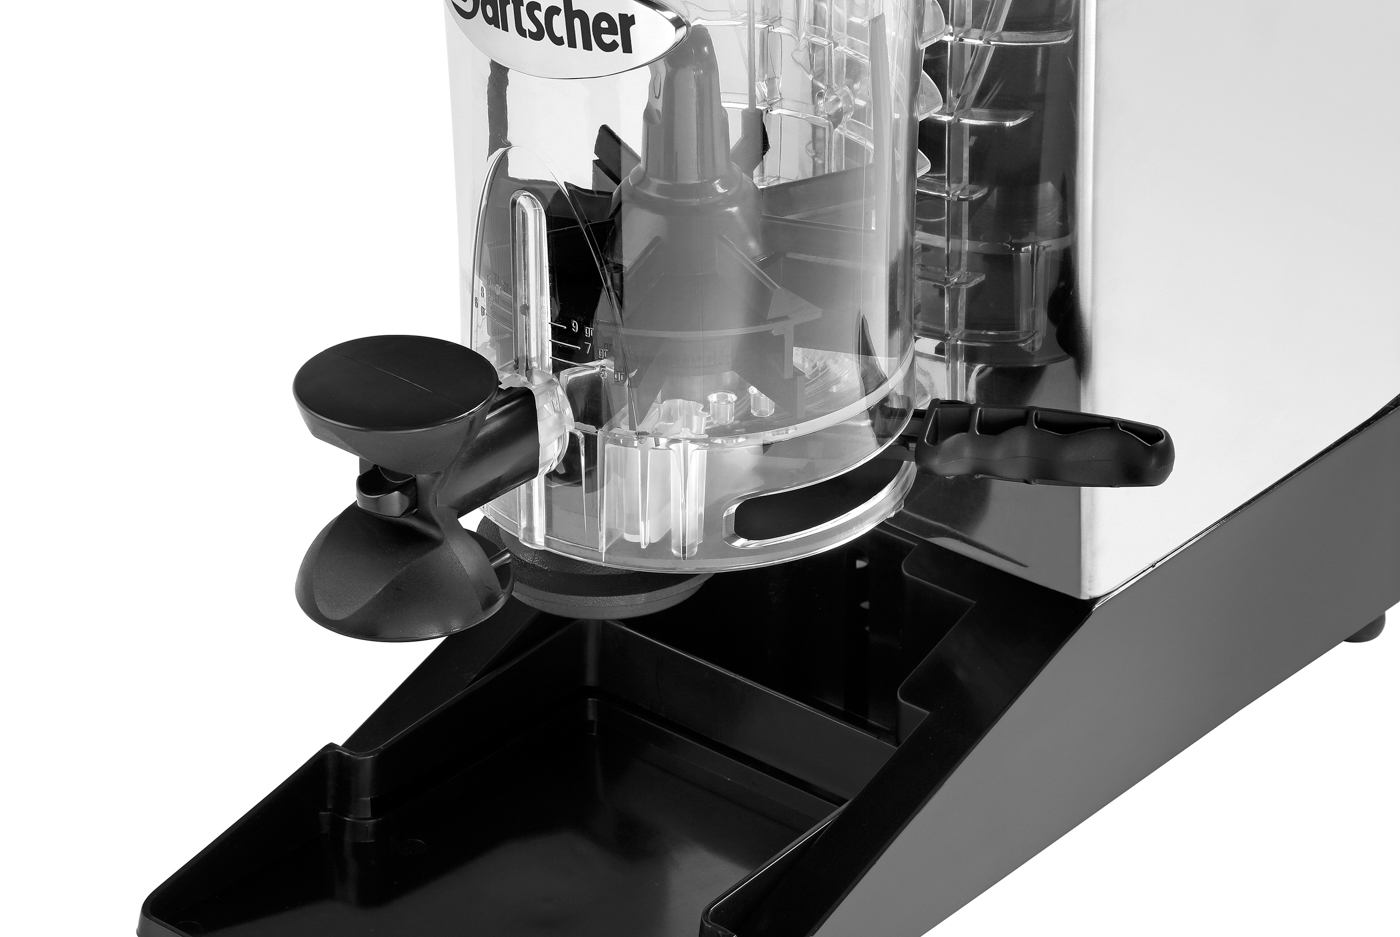 Bartscher Kaffeemühle Modell Space II | Spannung: 230 V | Maße: 20 x 39 x 600 cm. Gewicht: 8,4 kg